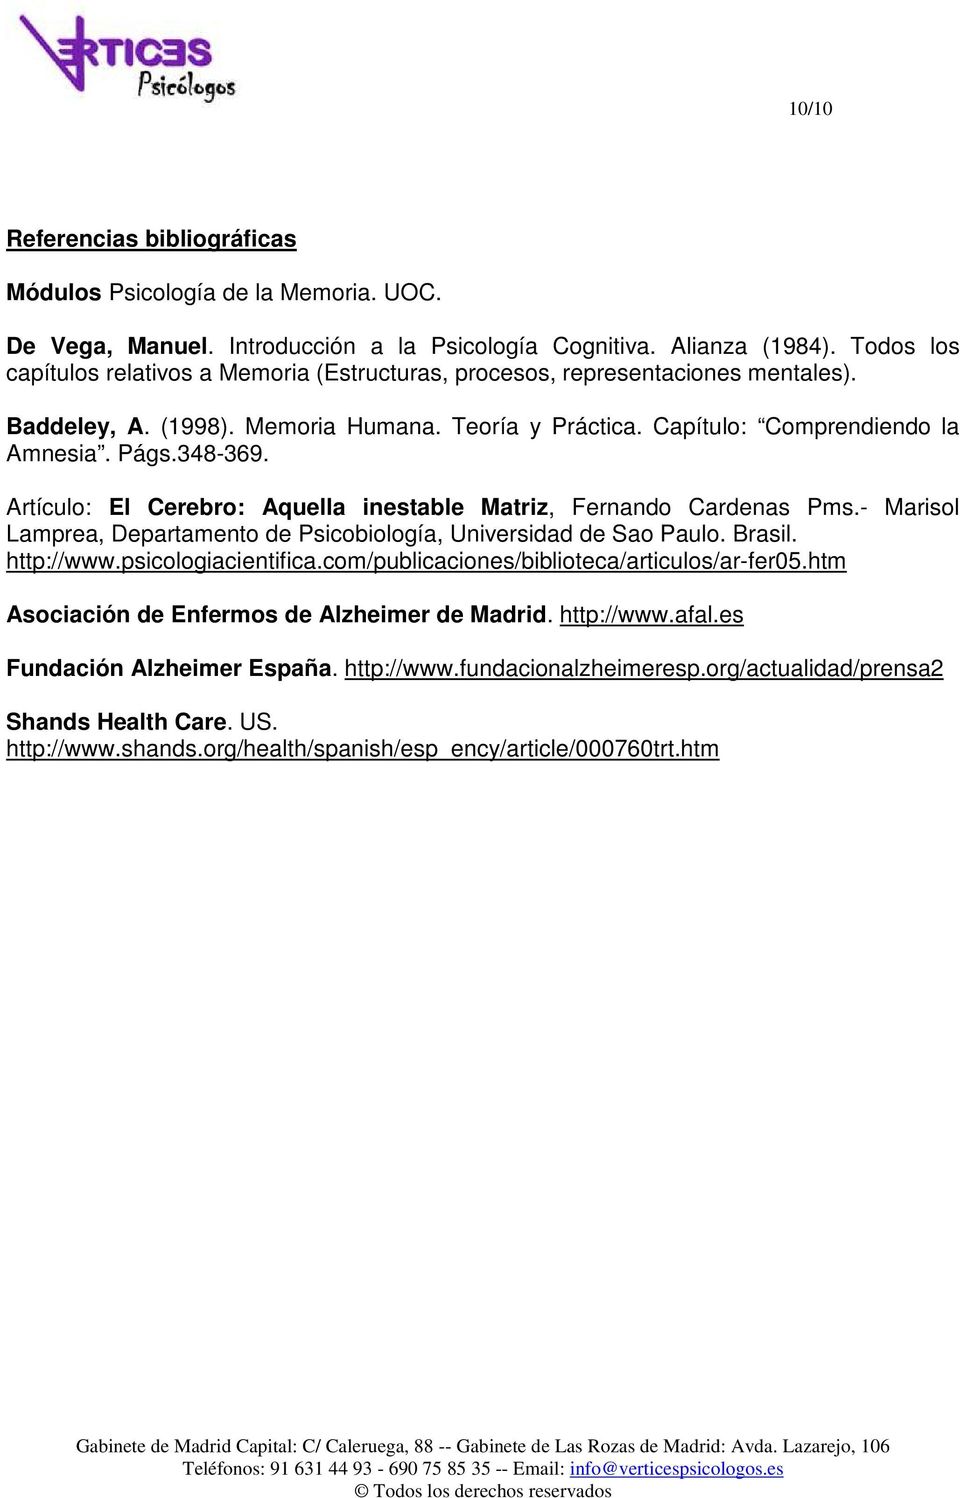 Artículo: El Cerebro: Aquella inestable Matriz, Fernando Cardenas Pms.- Marisol Lamprea, Departamento de Psicobiología, Universidad de Sao Paulo. Brasil. http://www.psicologiacientifica.